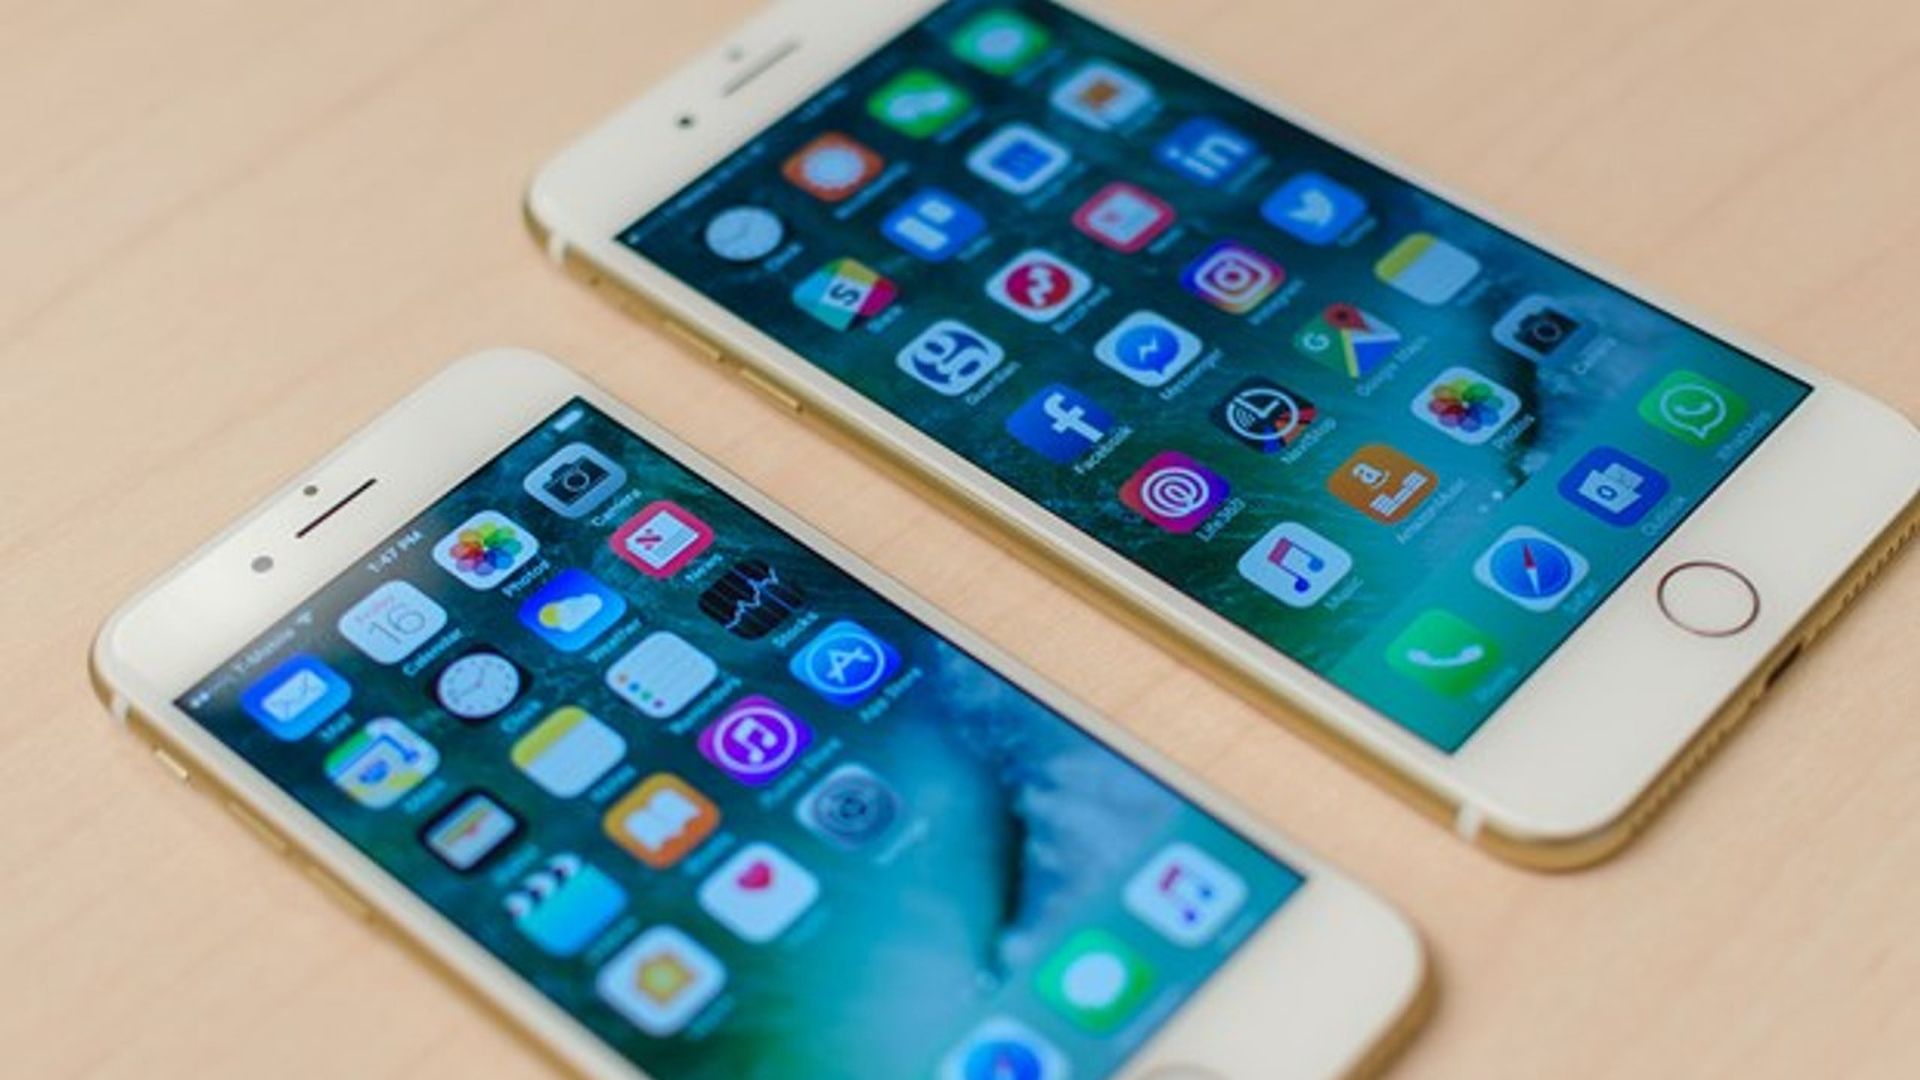 W tym artykule omówimy pozew Apple iPhone dotyczący problemów z baterią, a także sposób uzyskania pieniędzy z pozwu Apple, jeśli został on dotknięty.